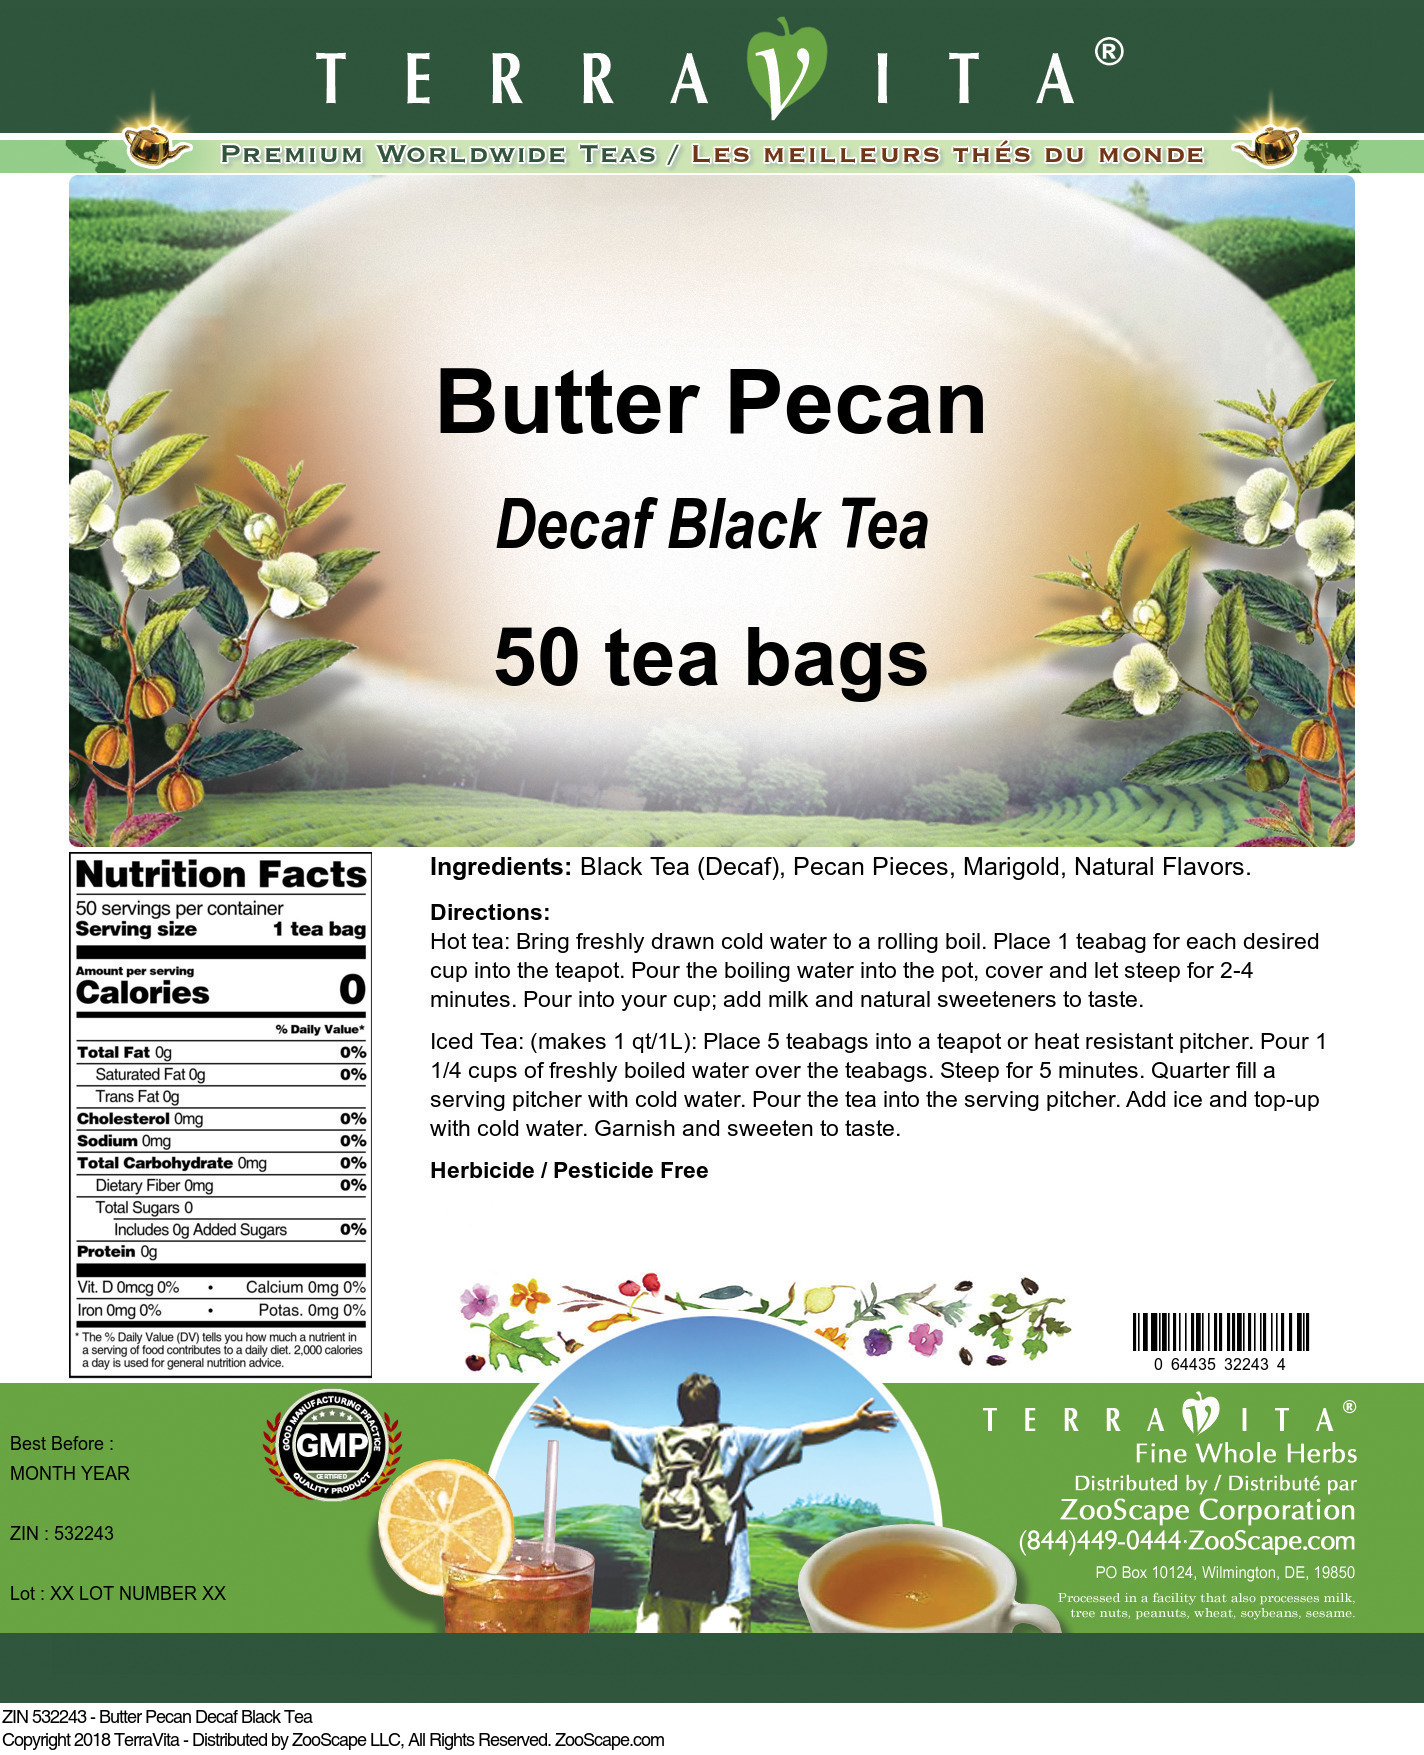 Butter Pecan Decaf Black Tea - Label